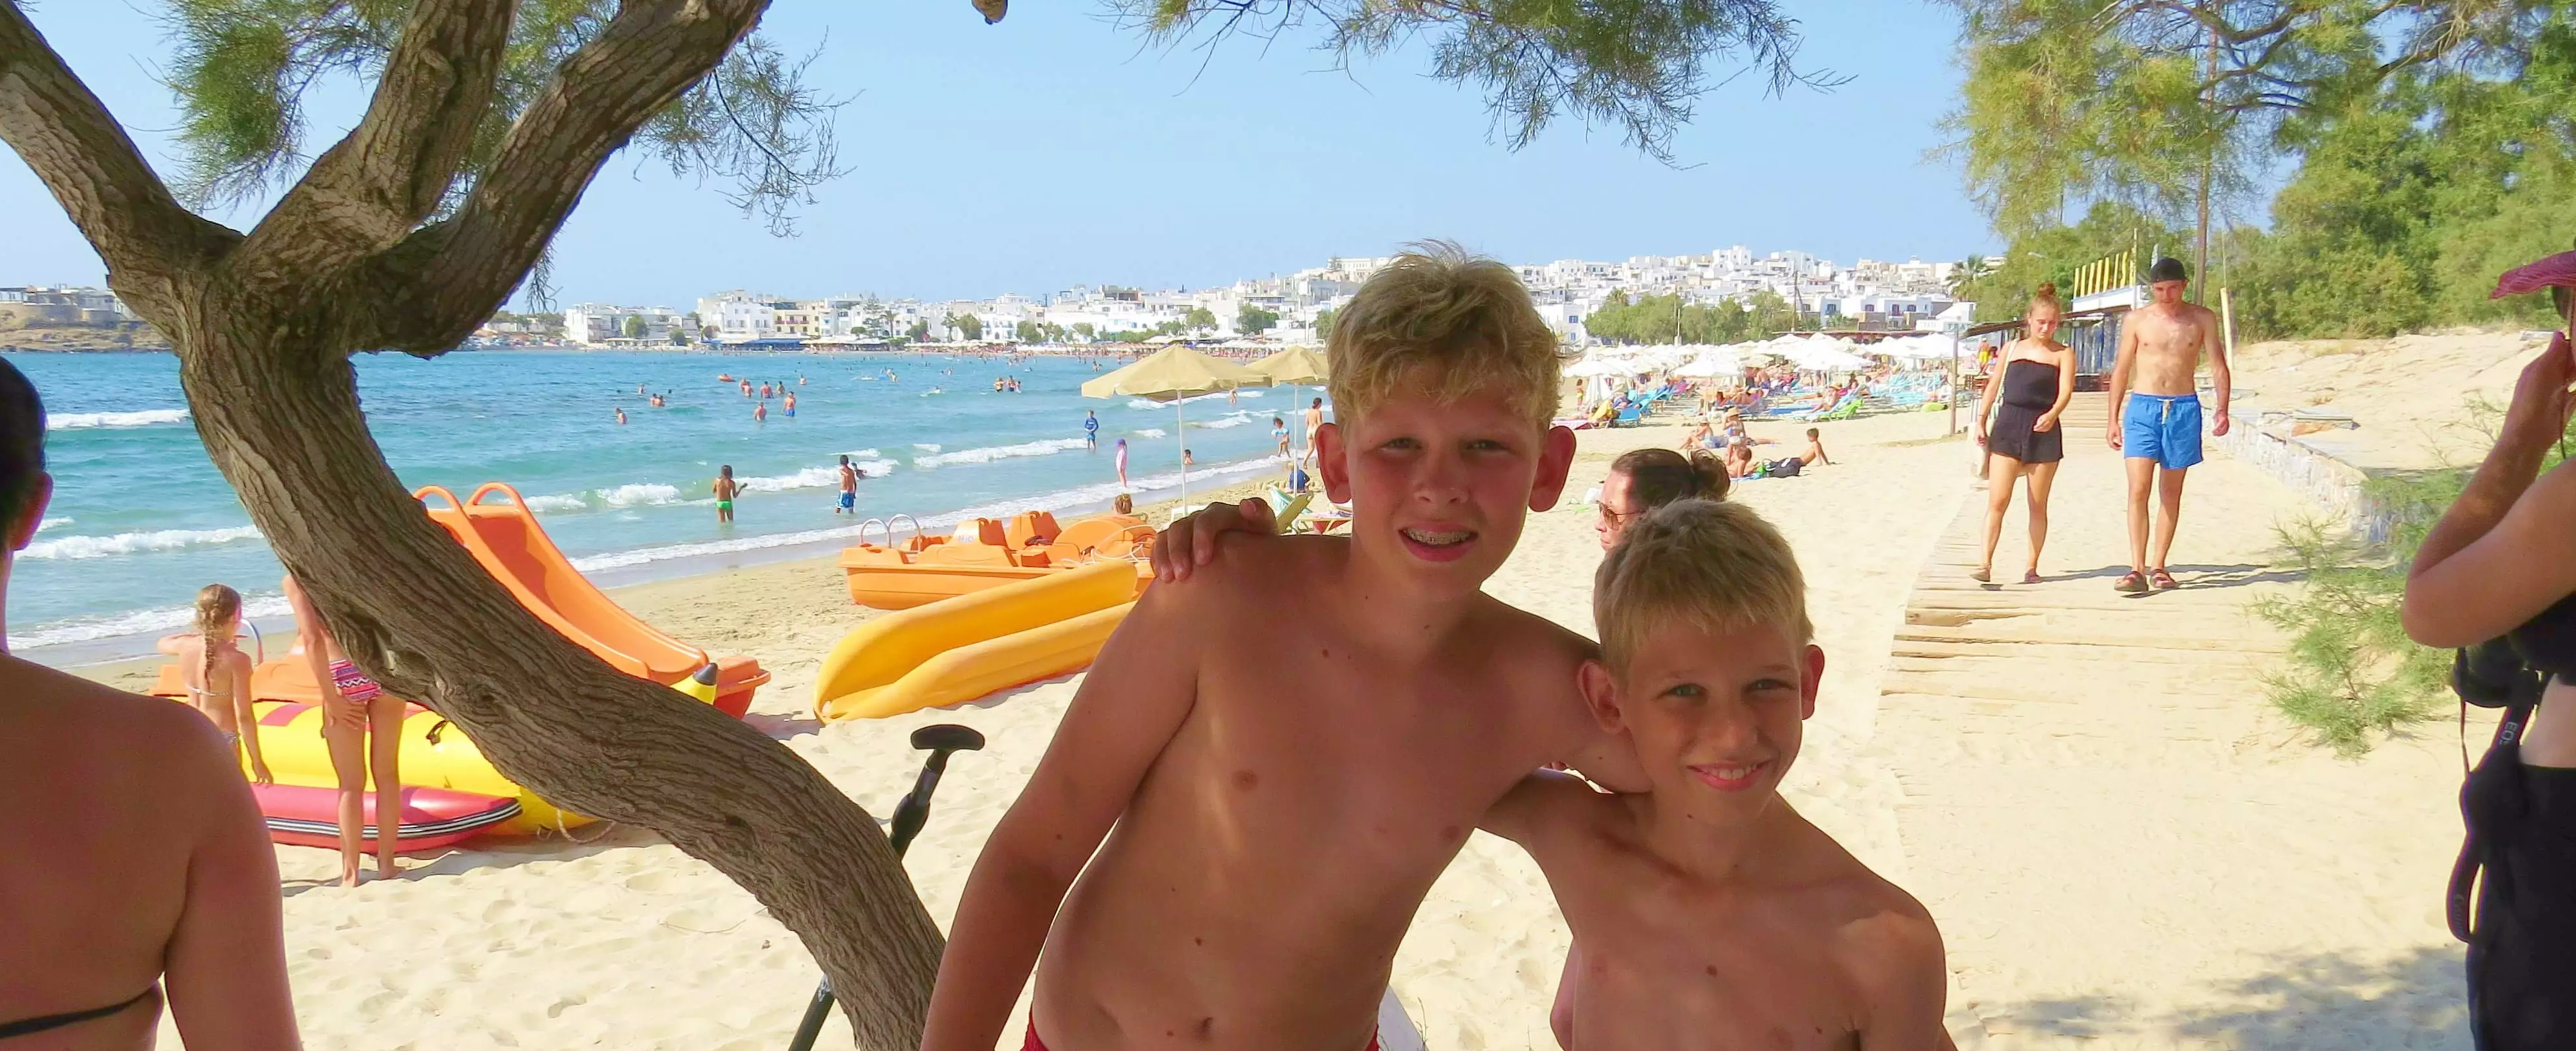 Onze kinderen op het strand tijdens onze vakantie in Griekenland